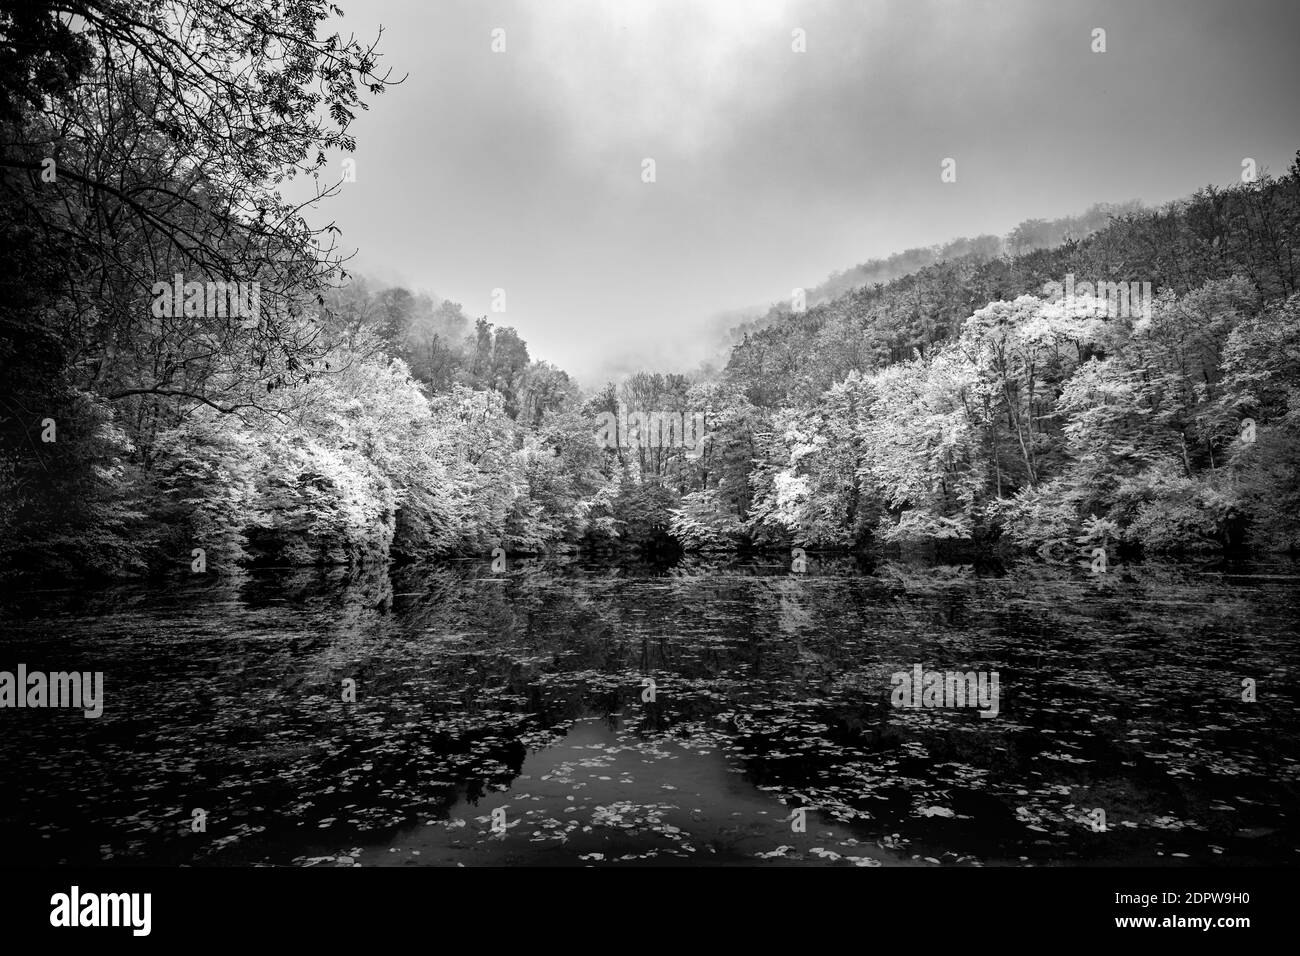 Nebliger Bergsee in schwarz und weiß. Dramatischer Herbstsee mit künstlerischem monochromen Prozess. Bildende Kunst, ruhige See Wasser Reflexion Stockfoto